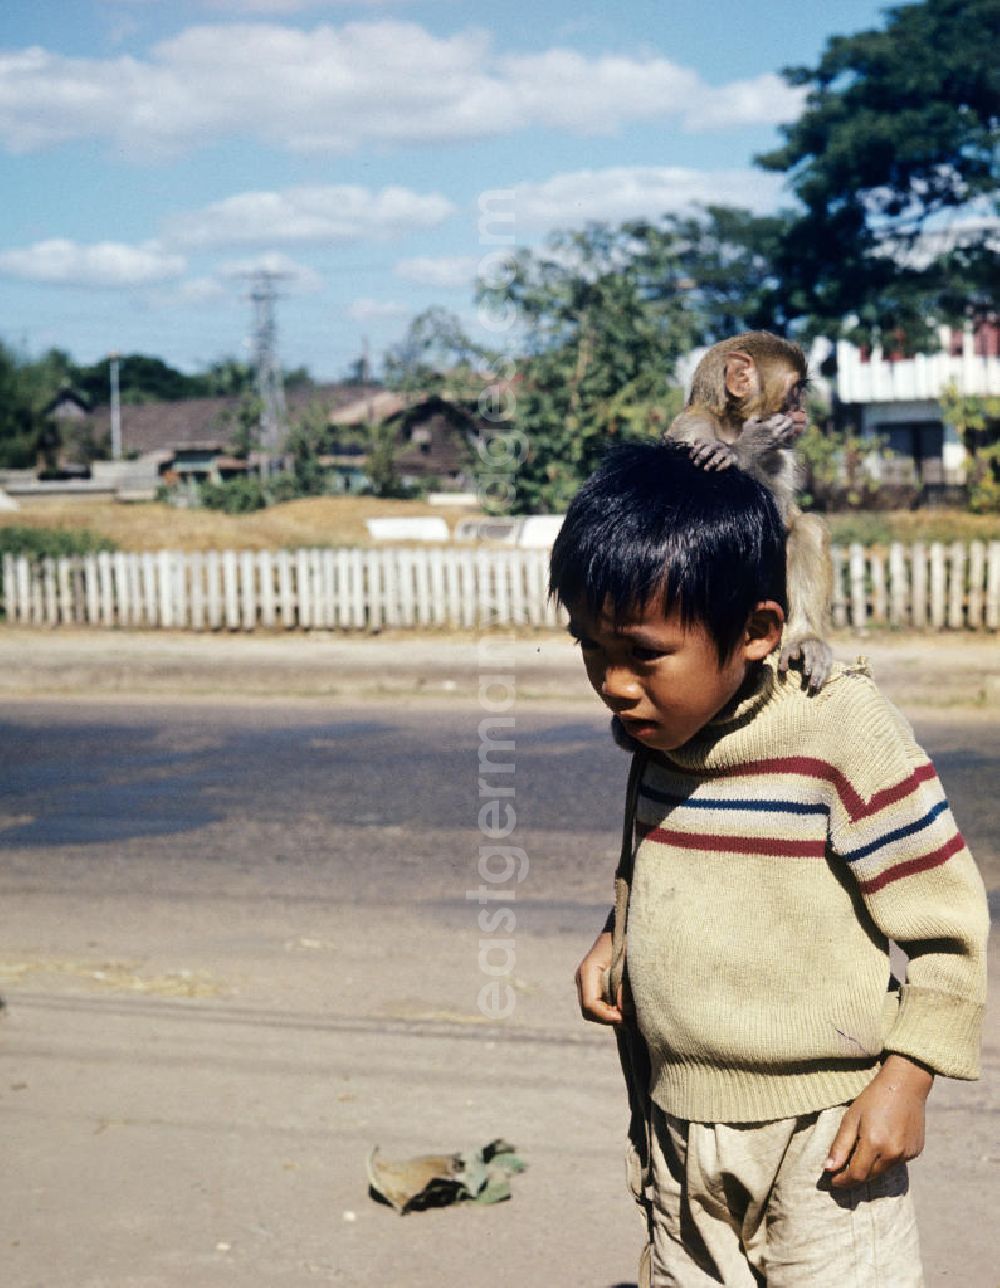 GDR picture archive: Vientiane - Ein Junge spielt mit einem Affen als Haustier auf einer Straße in Vientiane in der Demokratischen Volksrepublik Laos.